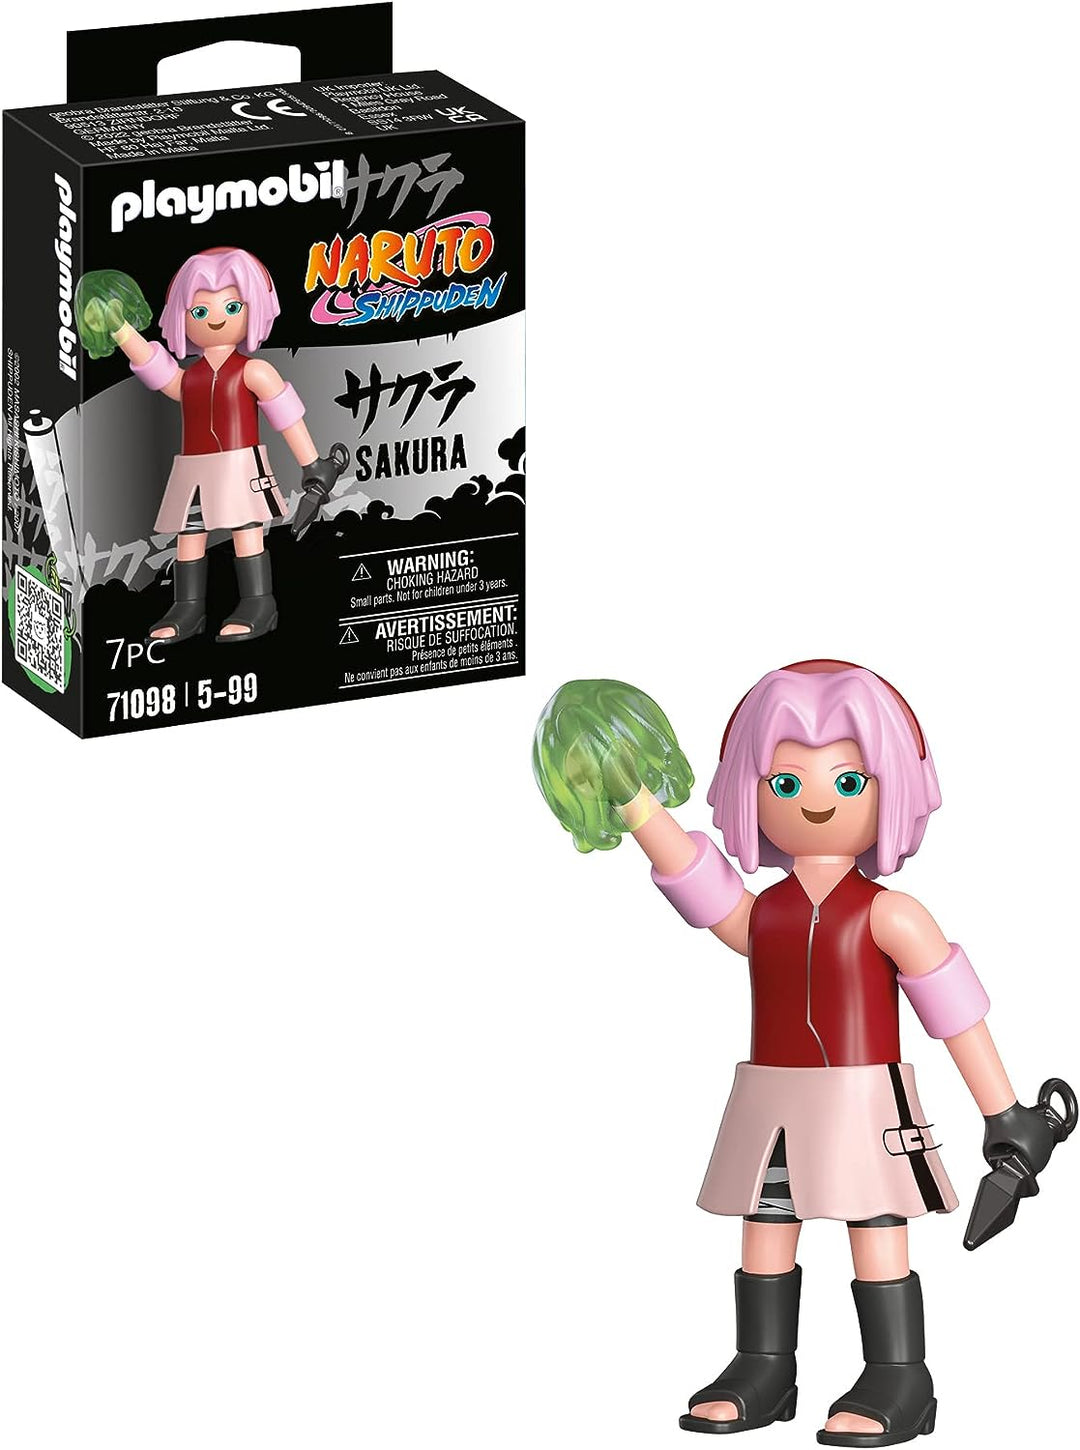 Playmobil 71098 Naruto: Sakura Figure Set, Naruto Shippuden anime collectors Figure